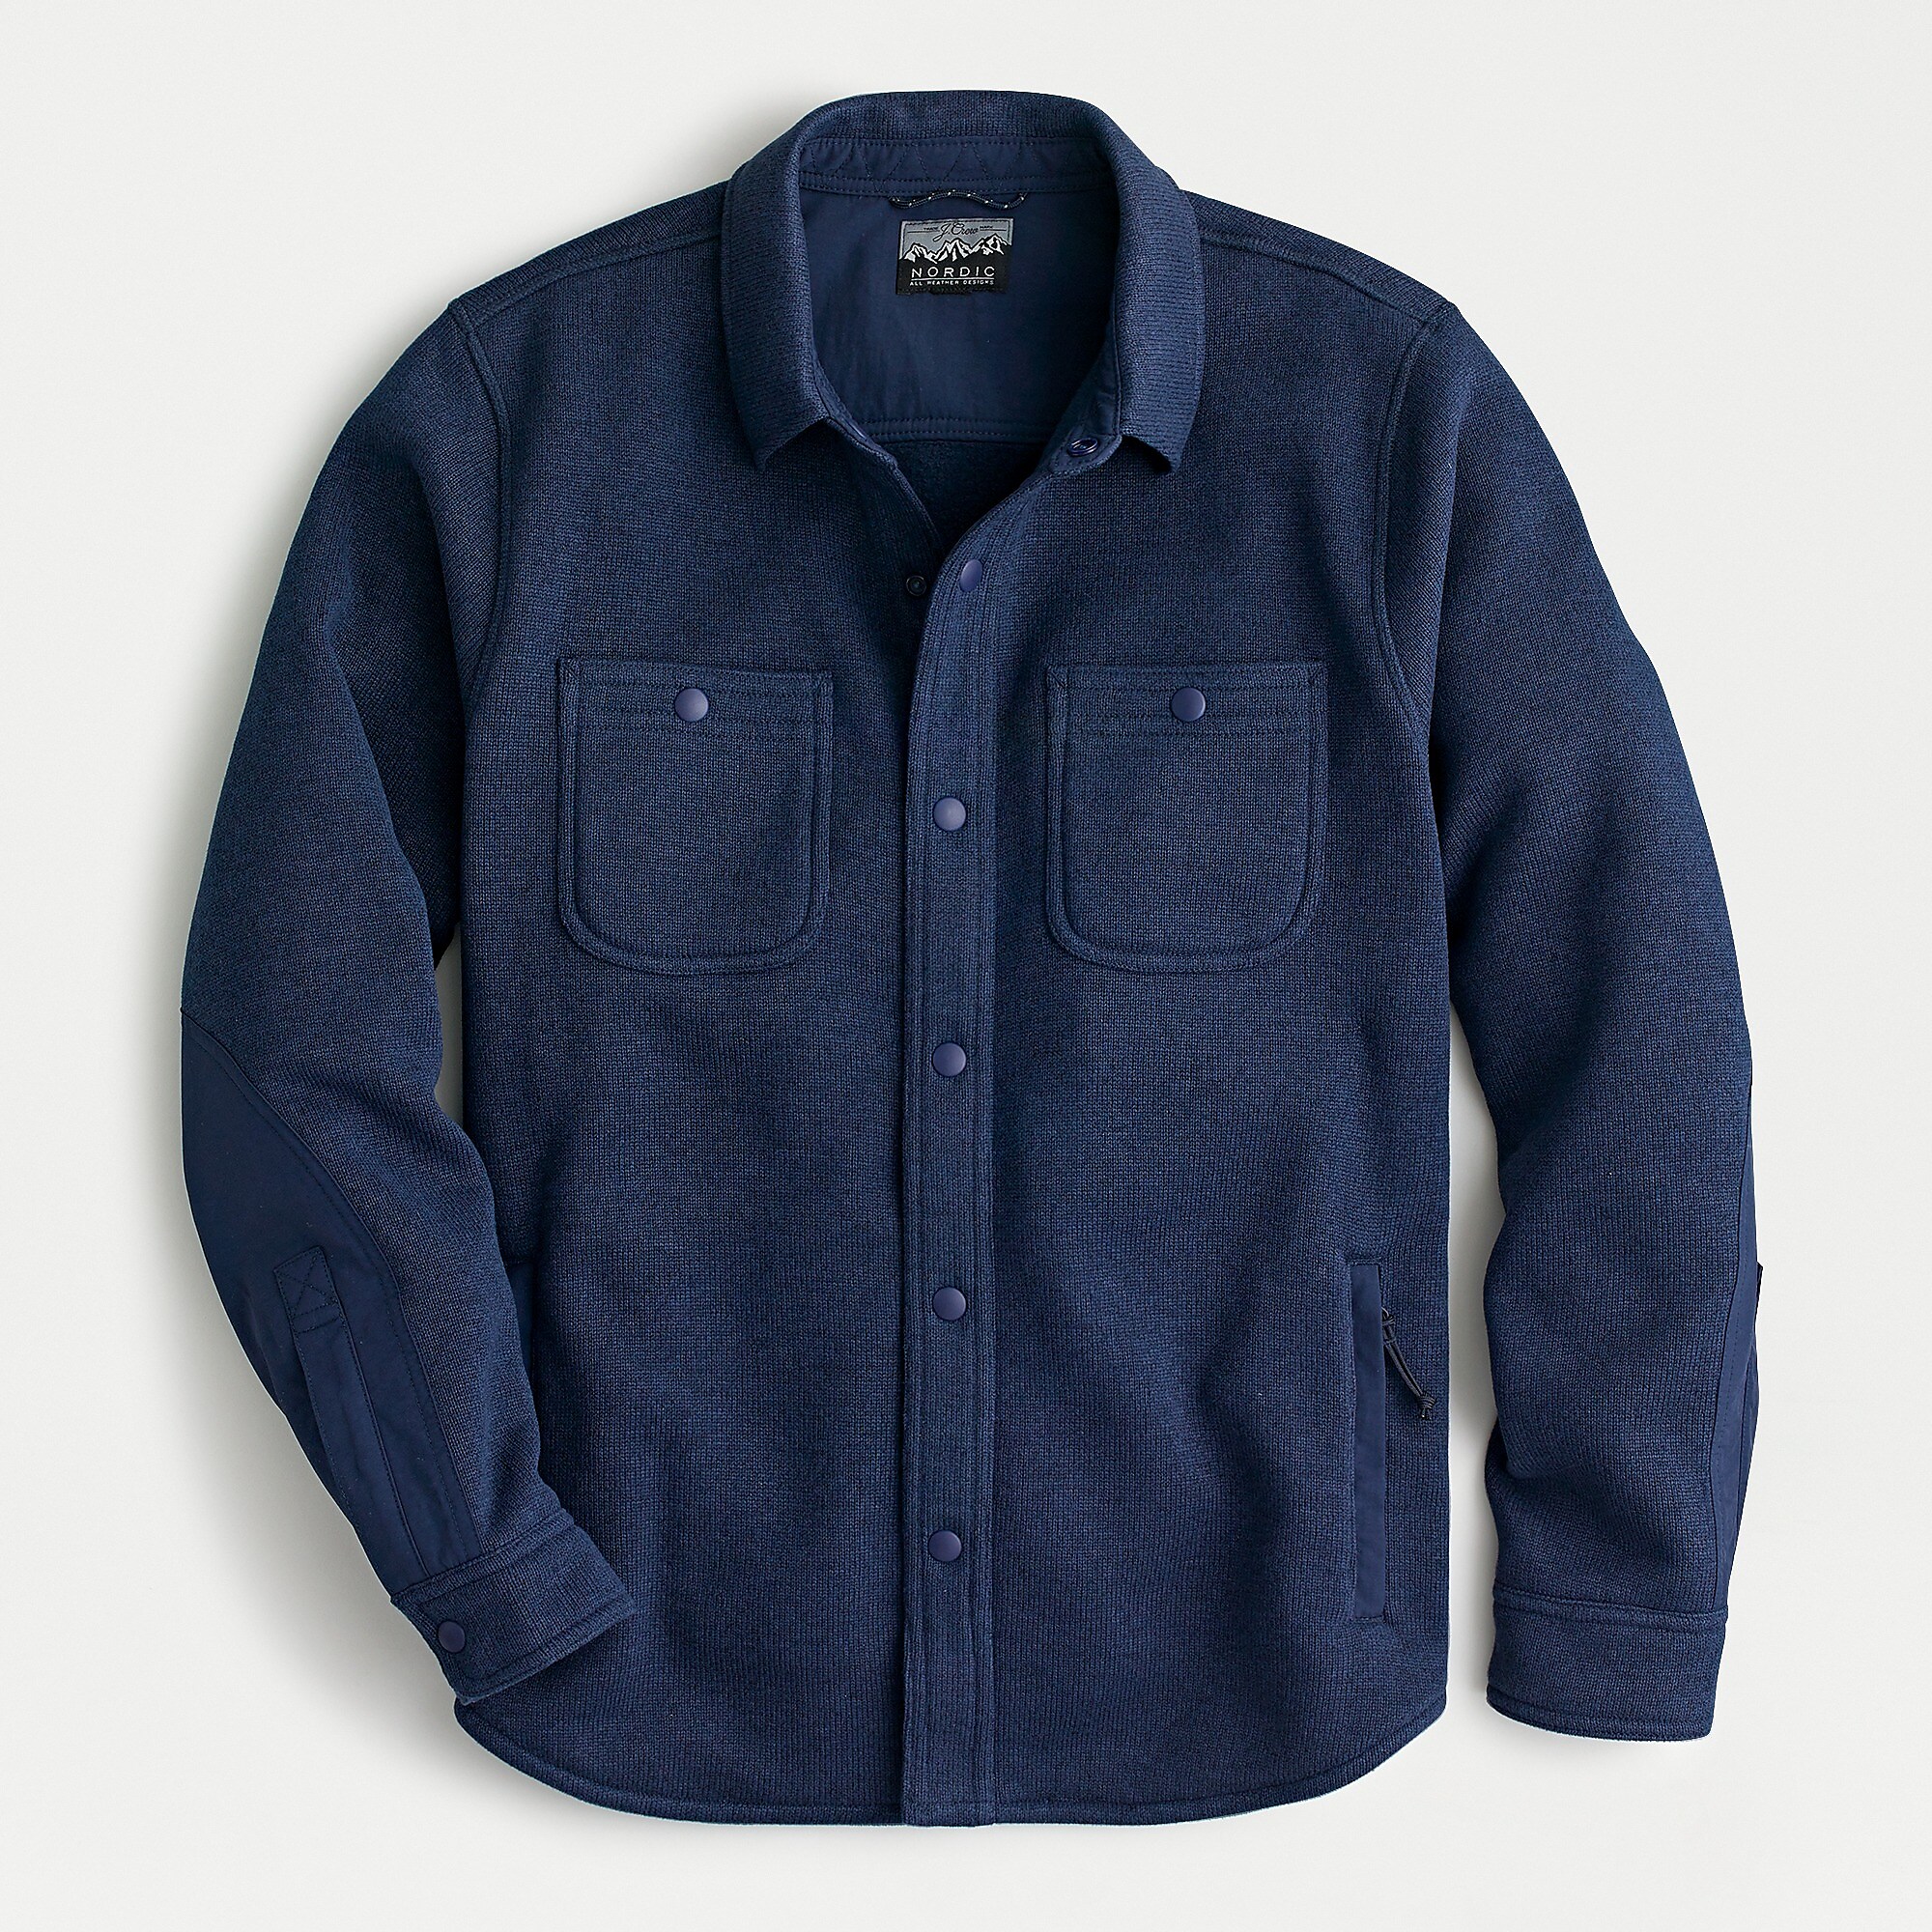 J.Crew: Nordic Shirt-jacket In Polartec® Sweater Fleece For Men